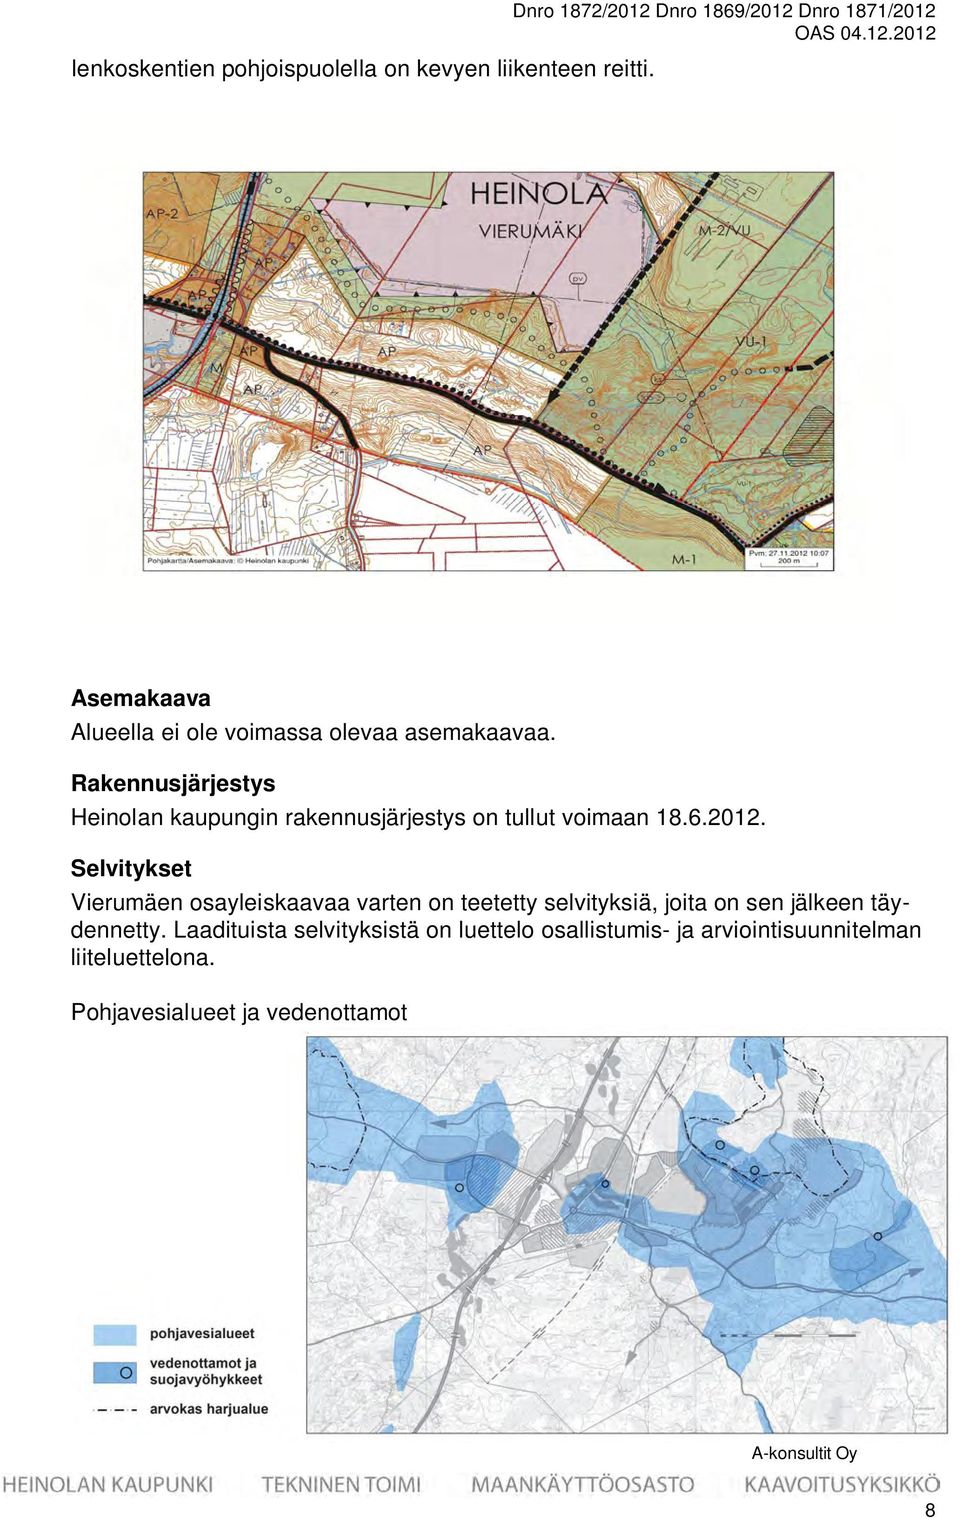 Rakennusjärjestys Heinolan kaupungin rakennusjärjestys on tullut voimaan 18.6.2012.